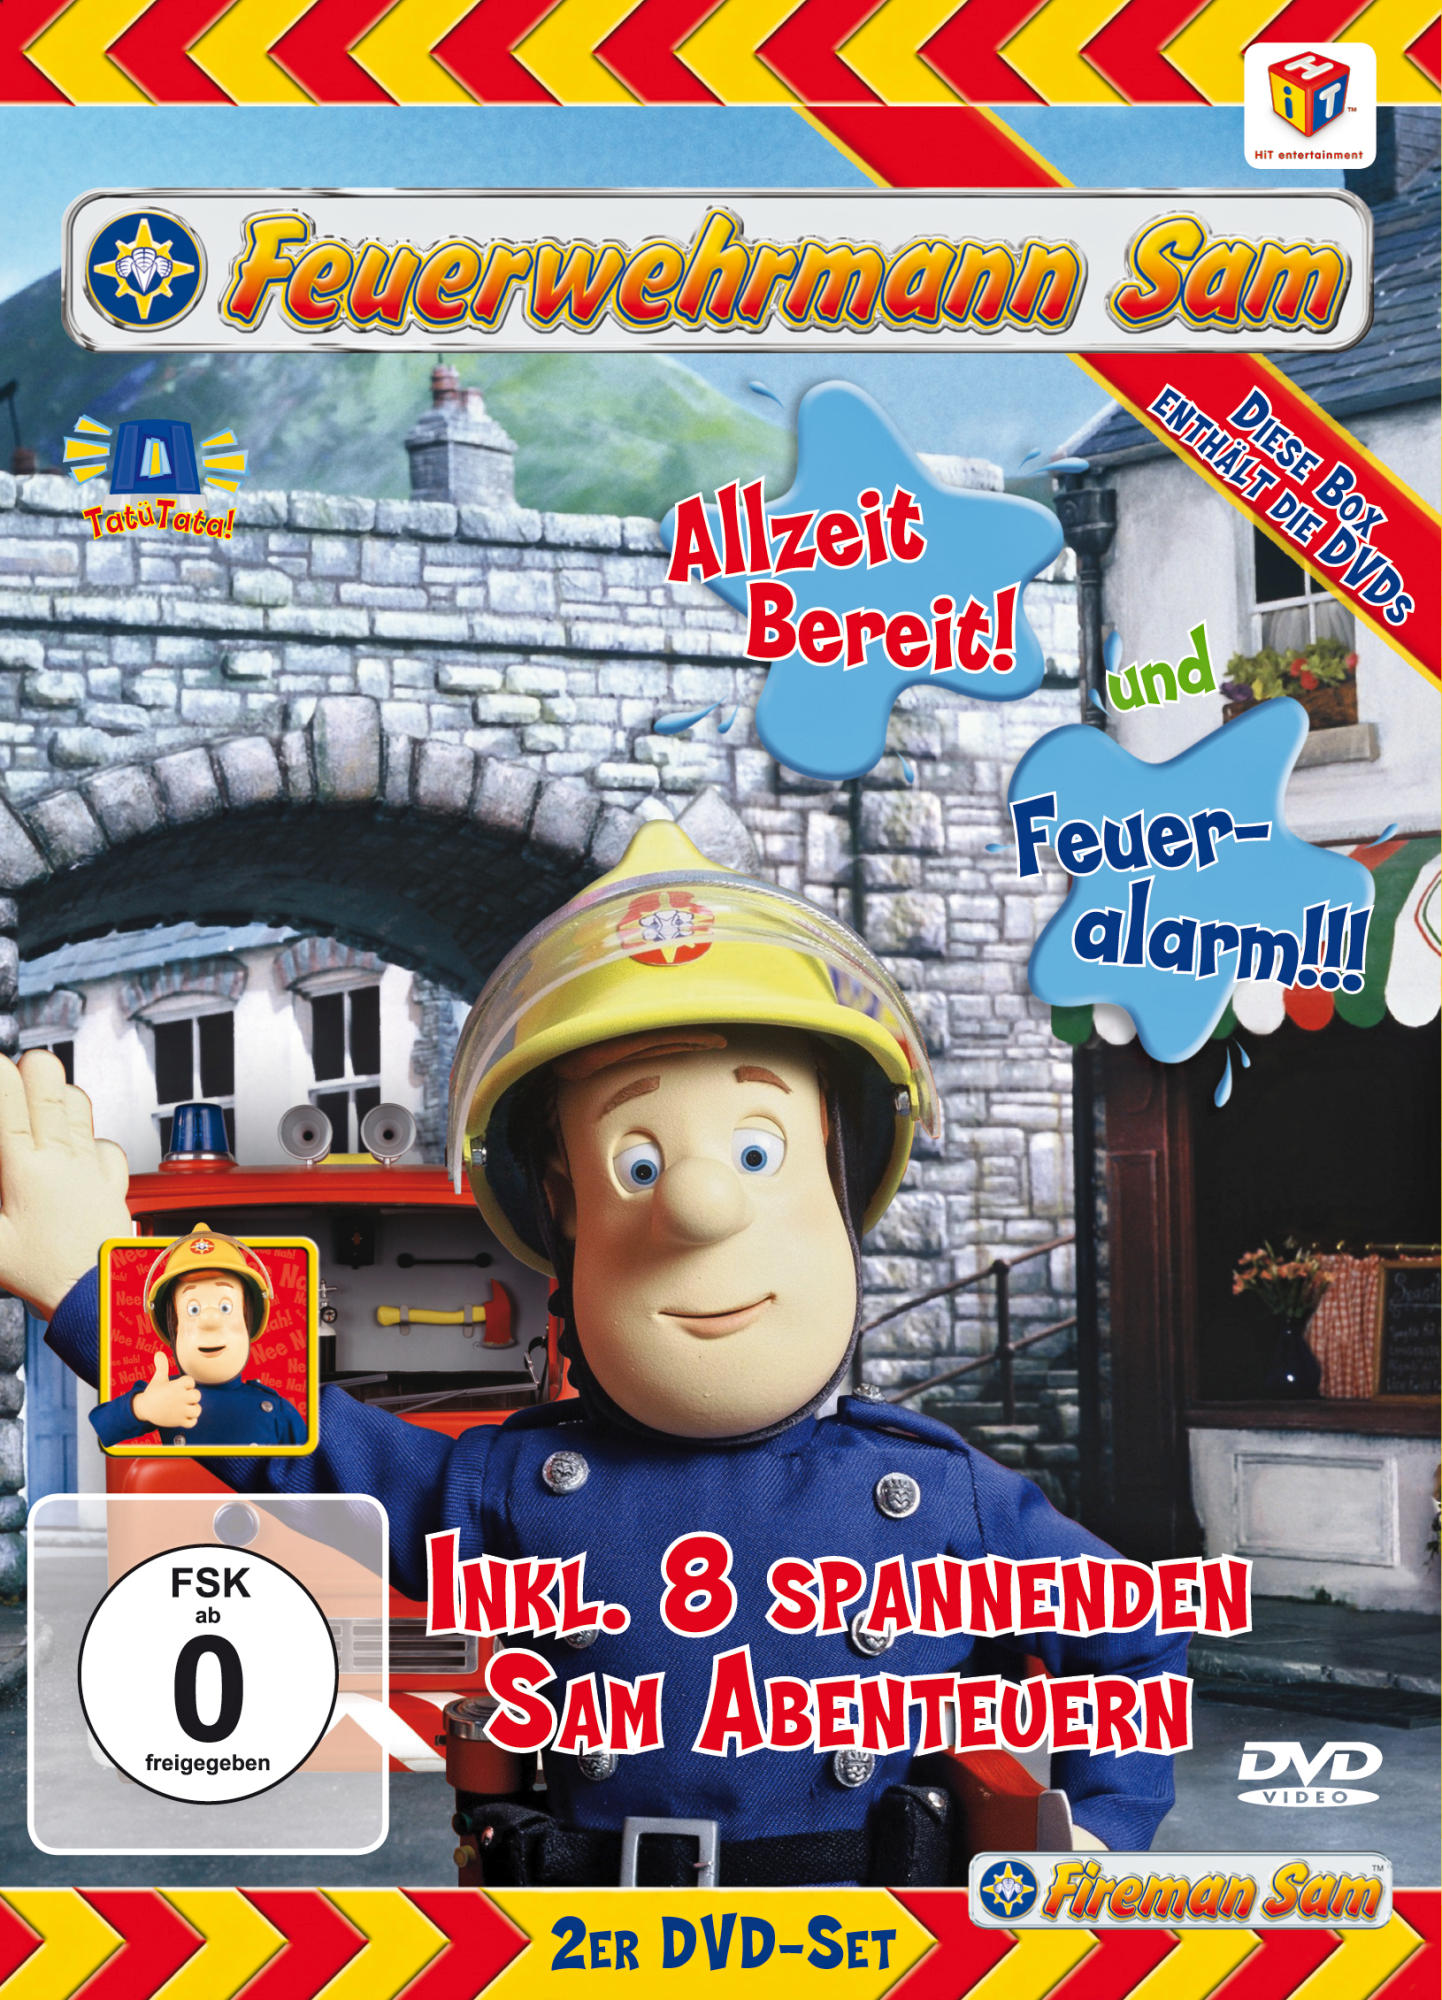 Feuerwehrmann Sam - Allzeit bereit! DVD Feueralarm!!! 